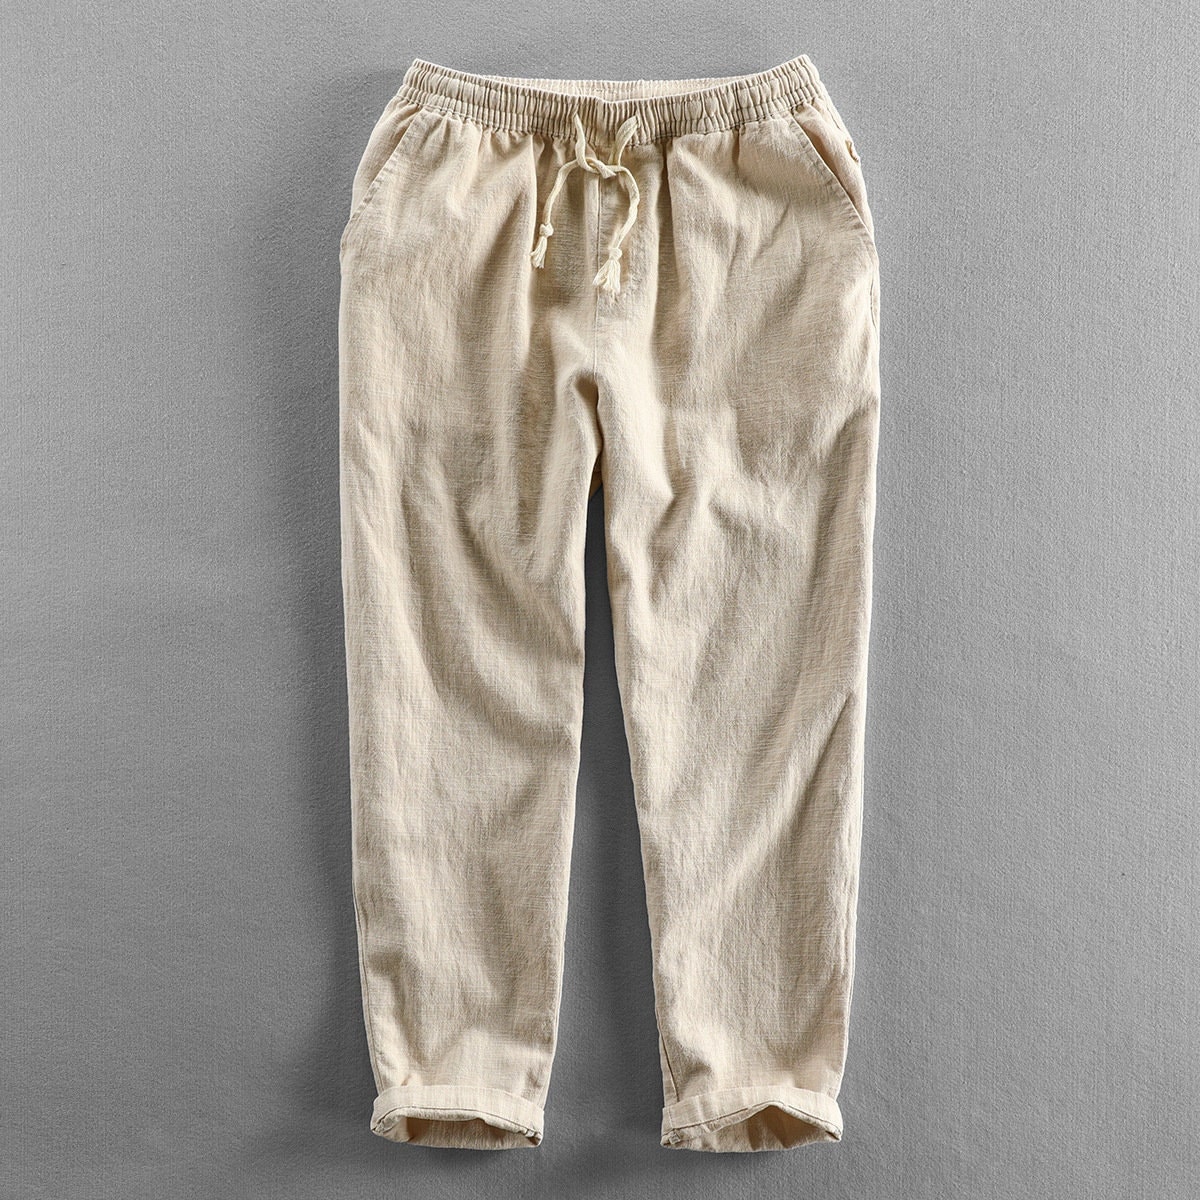 Men's Linen Cotton Loose Fit Casual Lightweight Elastic Waist Summer Beach  Pants - Walmart.com